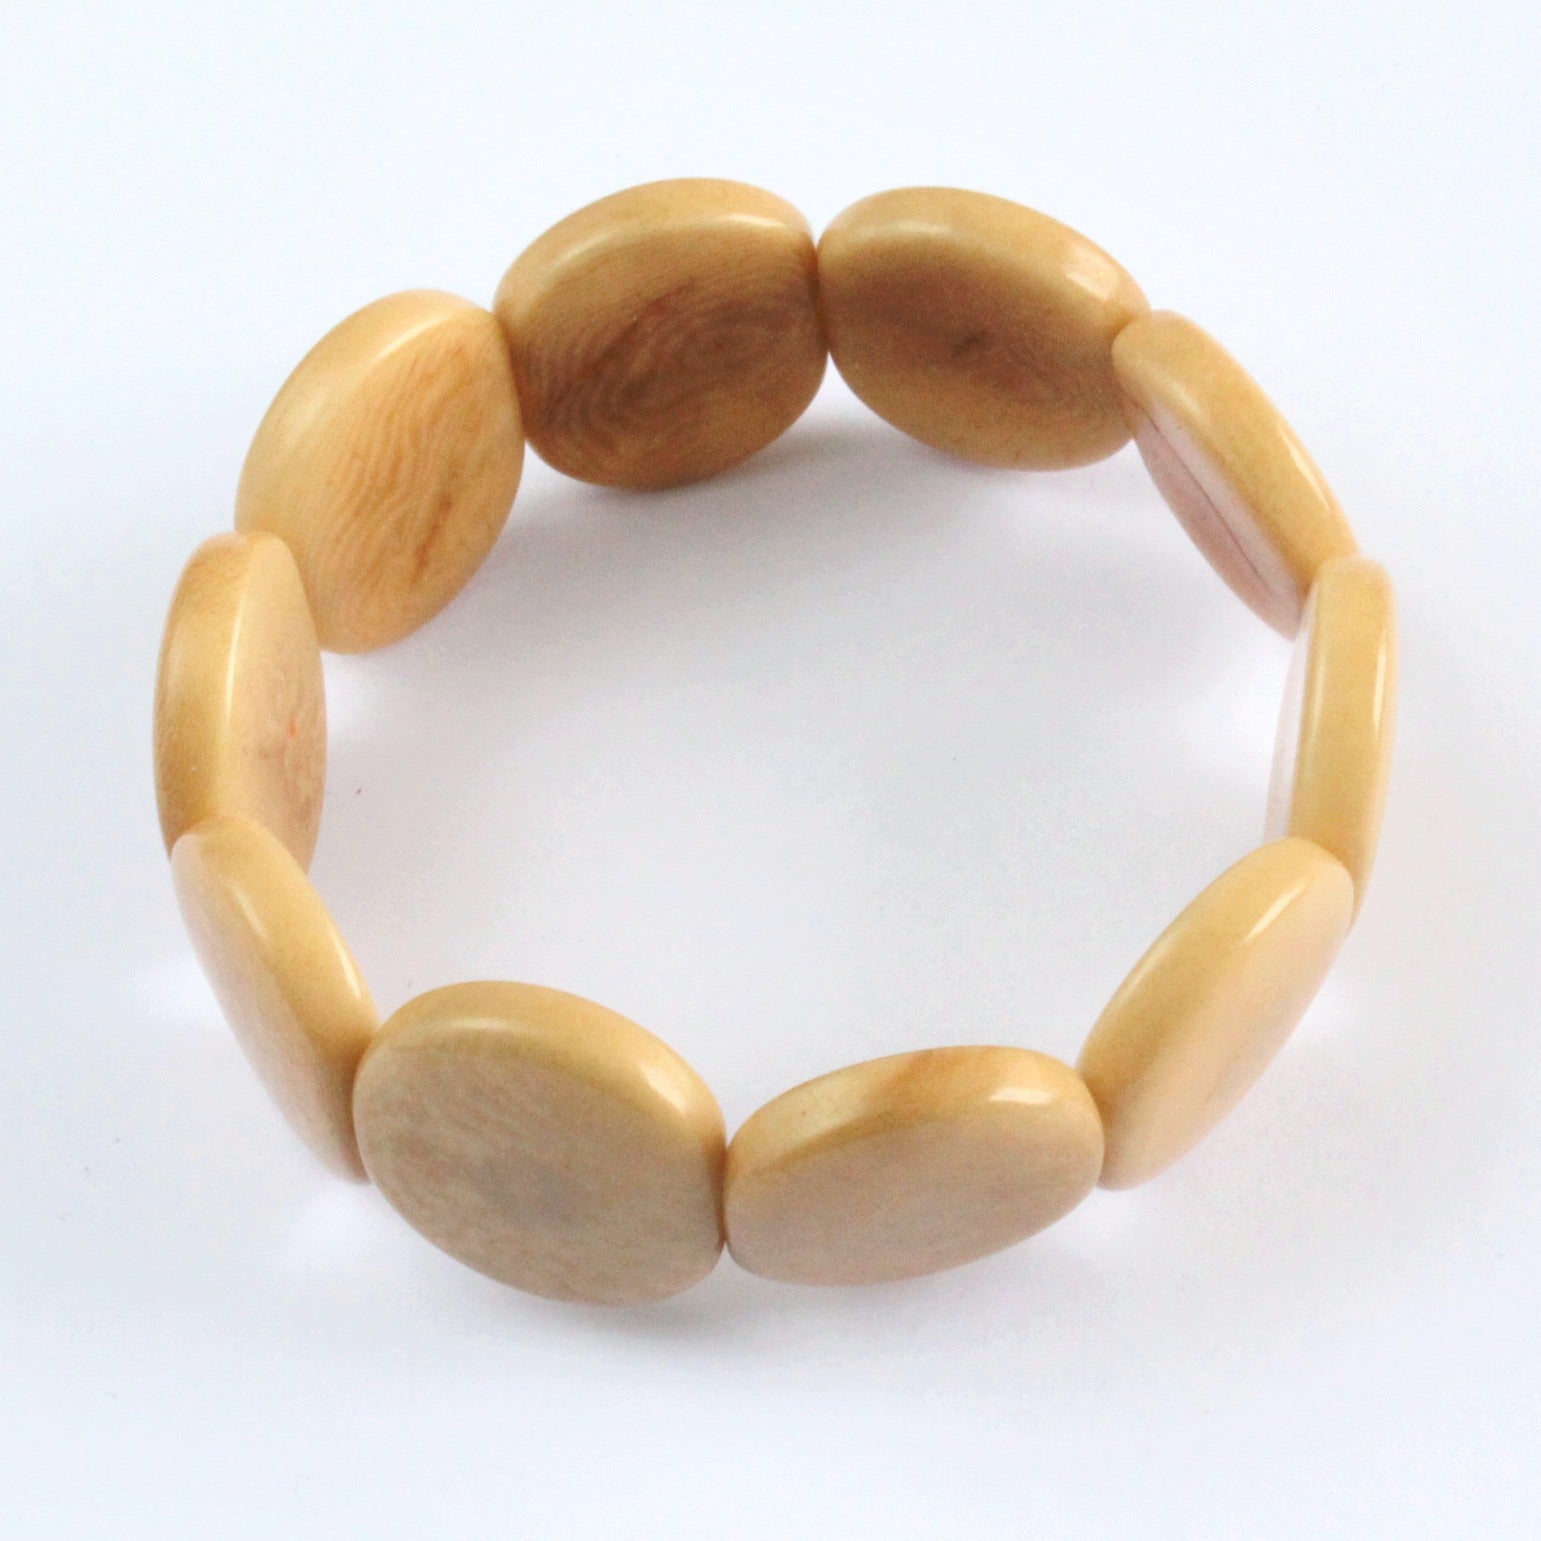 Handmade bracelet, tagua nut, sustainable,  colourful, beige